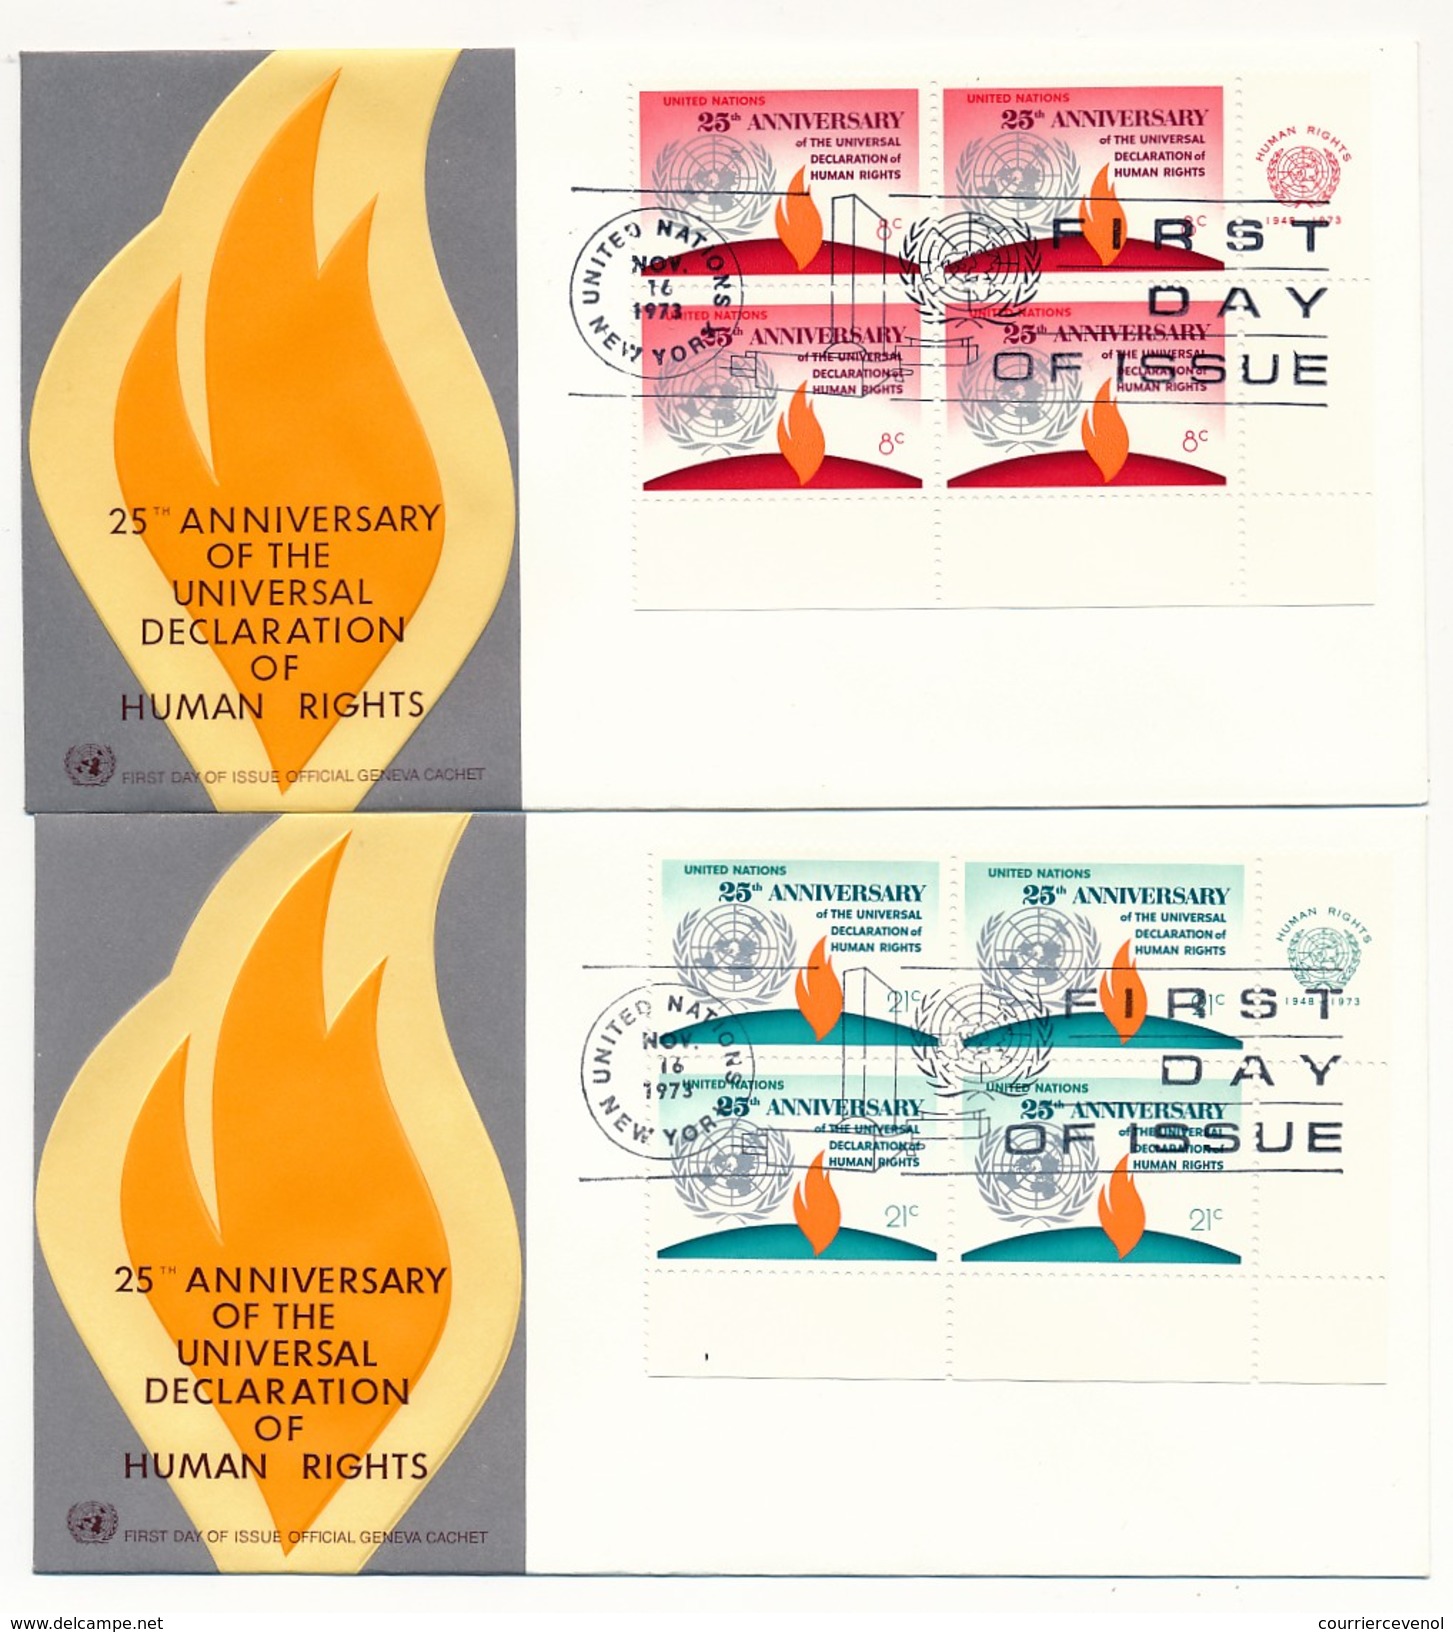 NATIONS UNIES - 10 Enveloppes FDC - 25eme Anniversaire Déclaration Des Droits De L'Homme - New York - Genève - 1973 - UNO